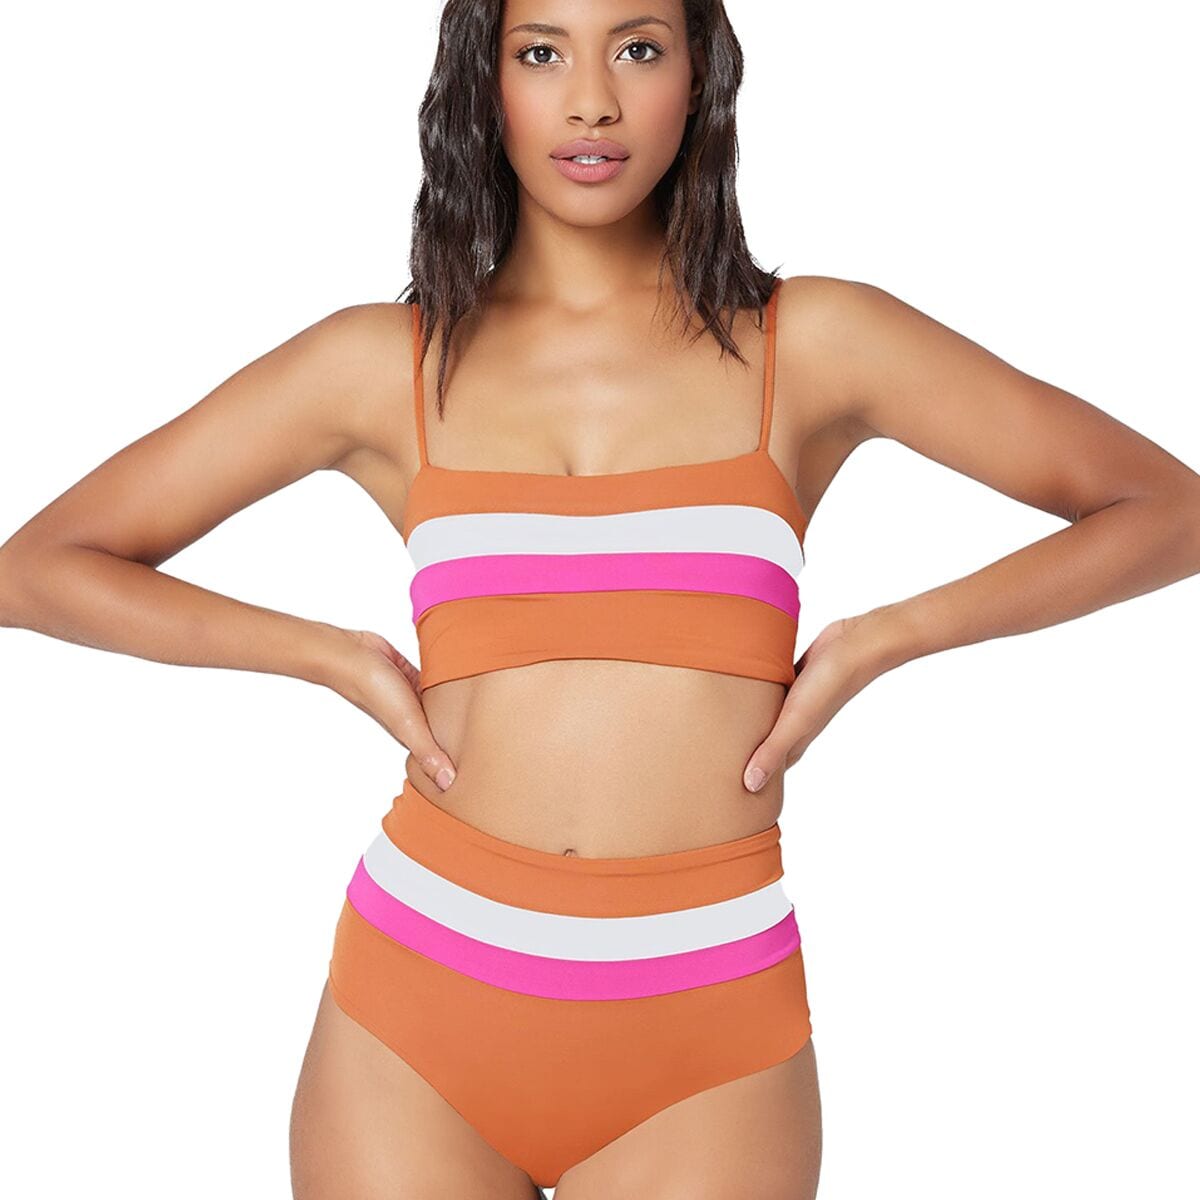 L Space Rebel Stripe Bikini Top - Women's Amber/Bougainvillea/Cream L -  CBRLT18-ABC -L